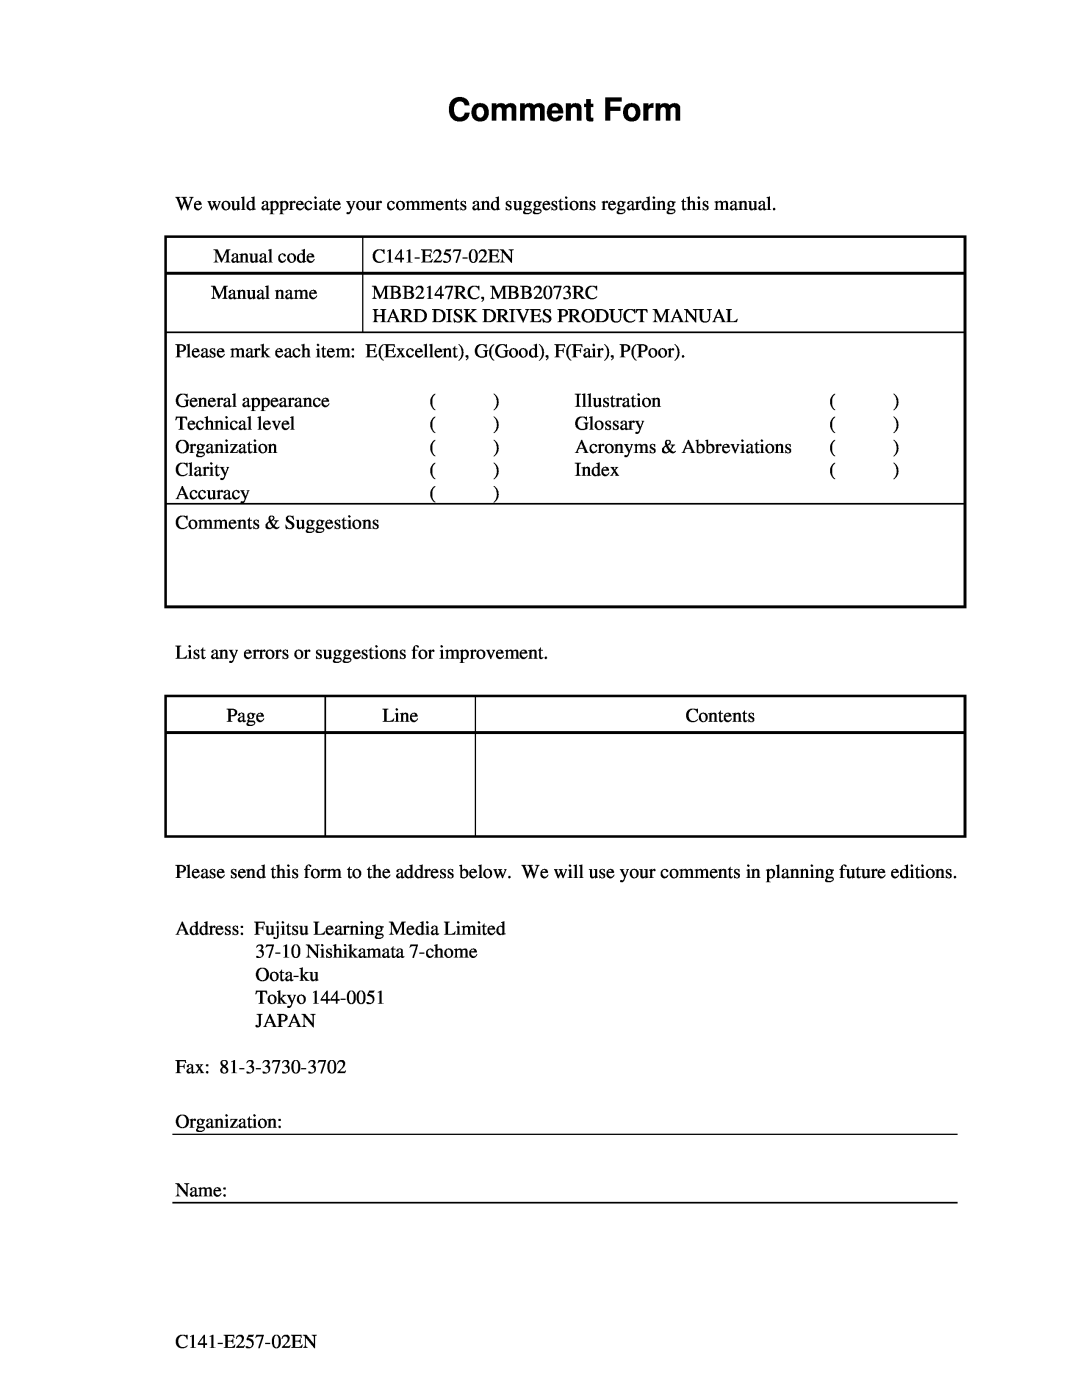 Fujitsu MBB2073RC, MBB2147RC manual Comment Form 